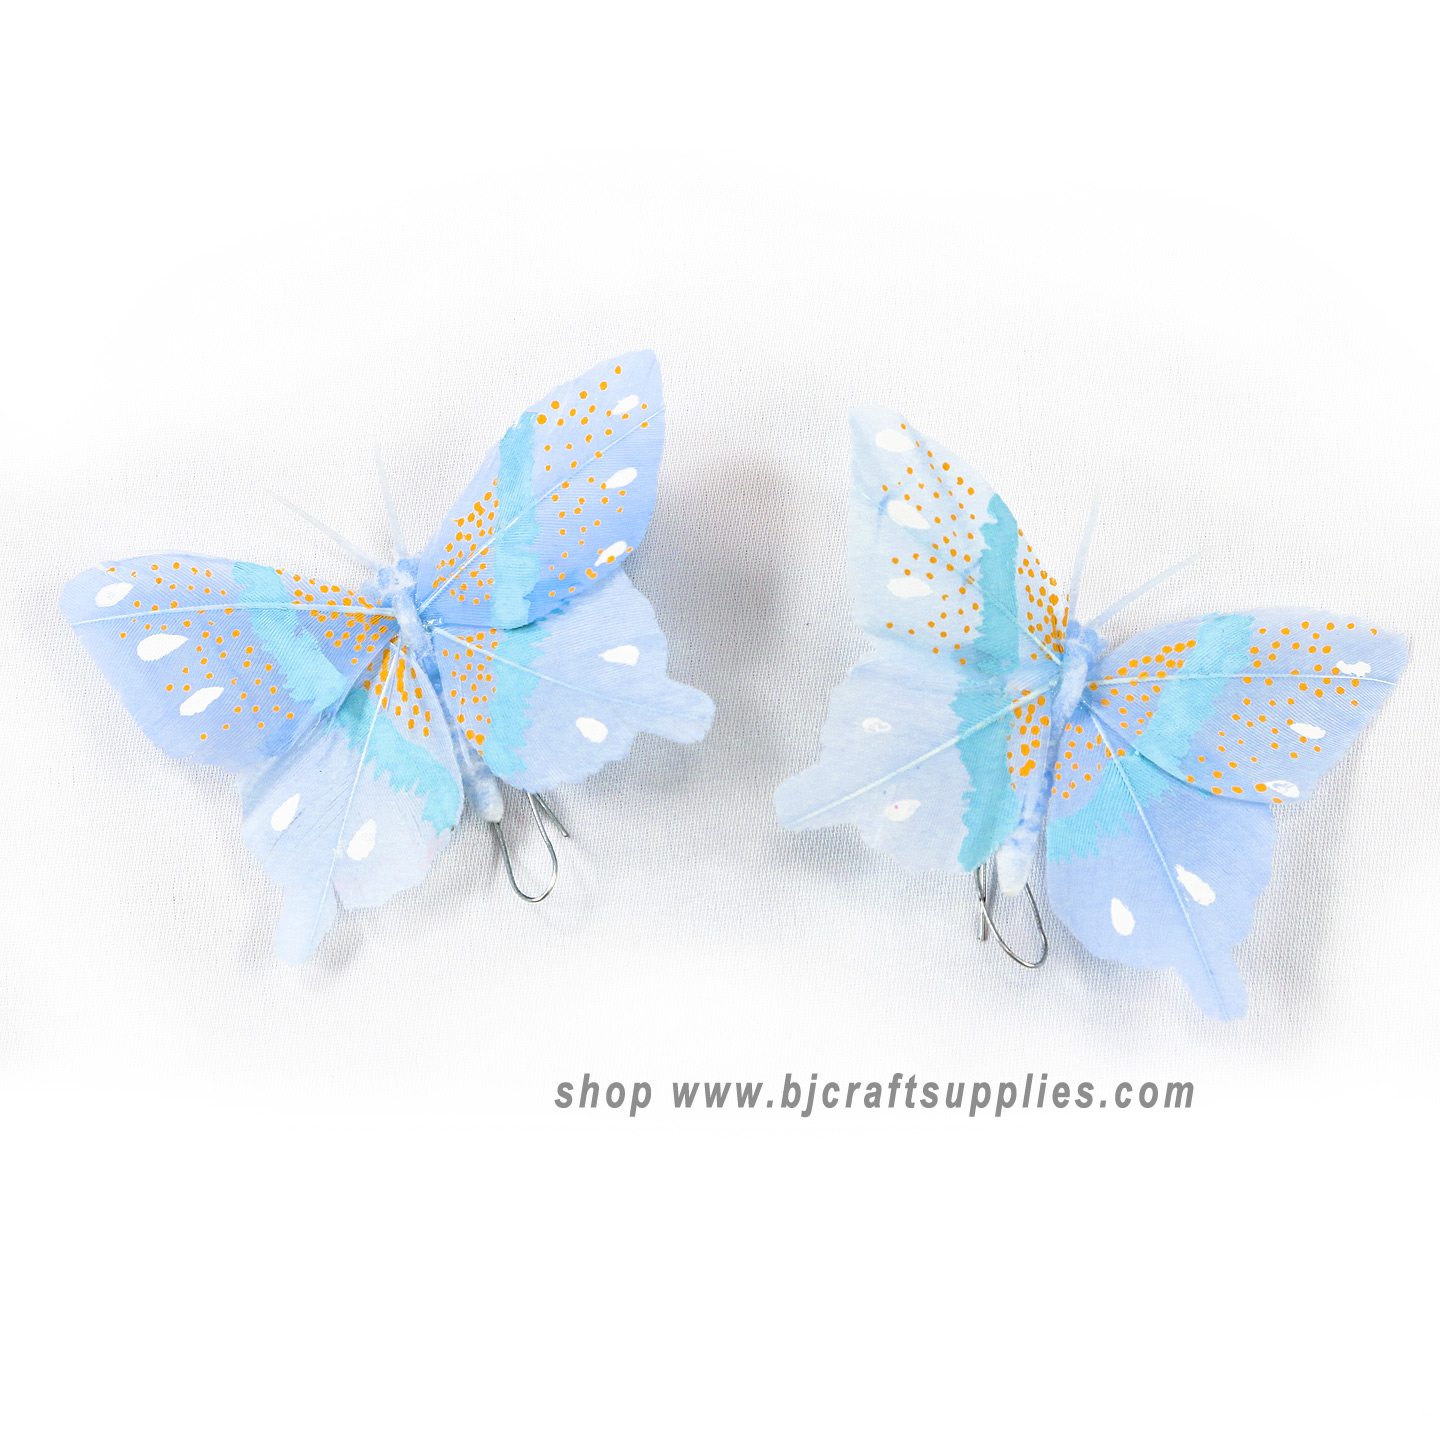 Decorative Butterflies - Artificial Butterflies - Butterflies for Crafts - Fake Butterflies